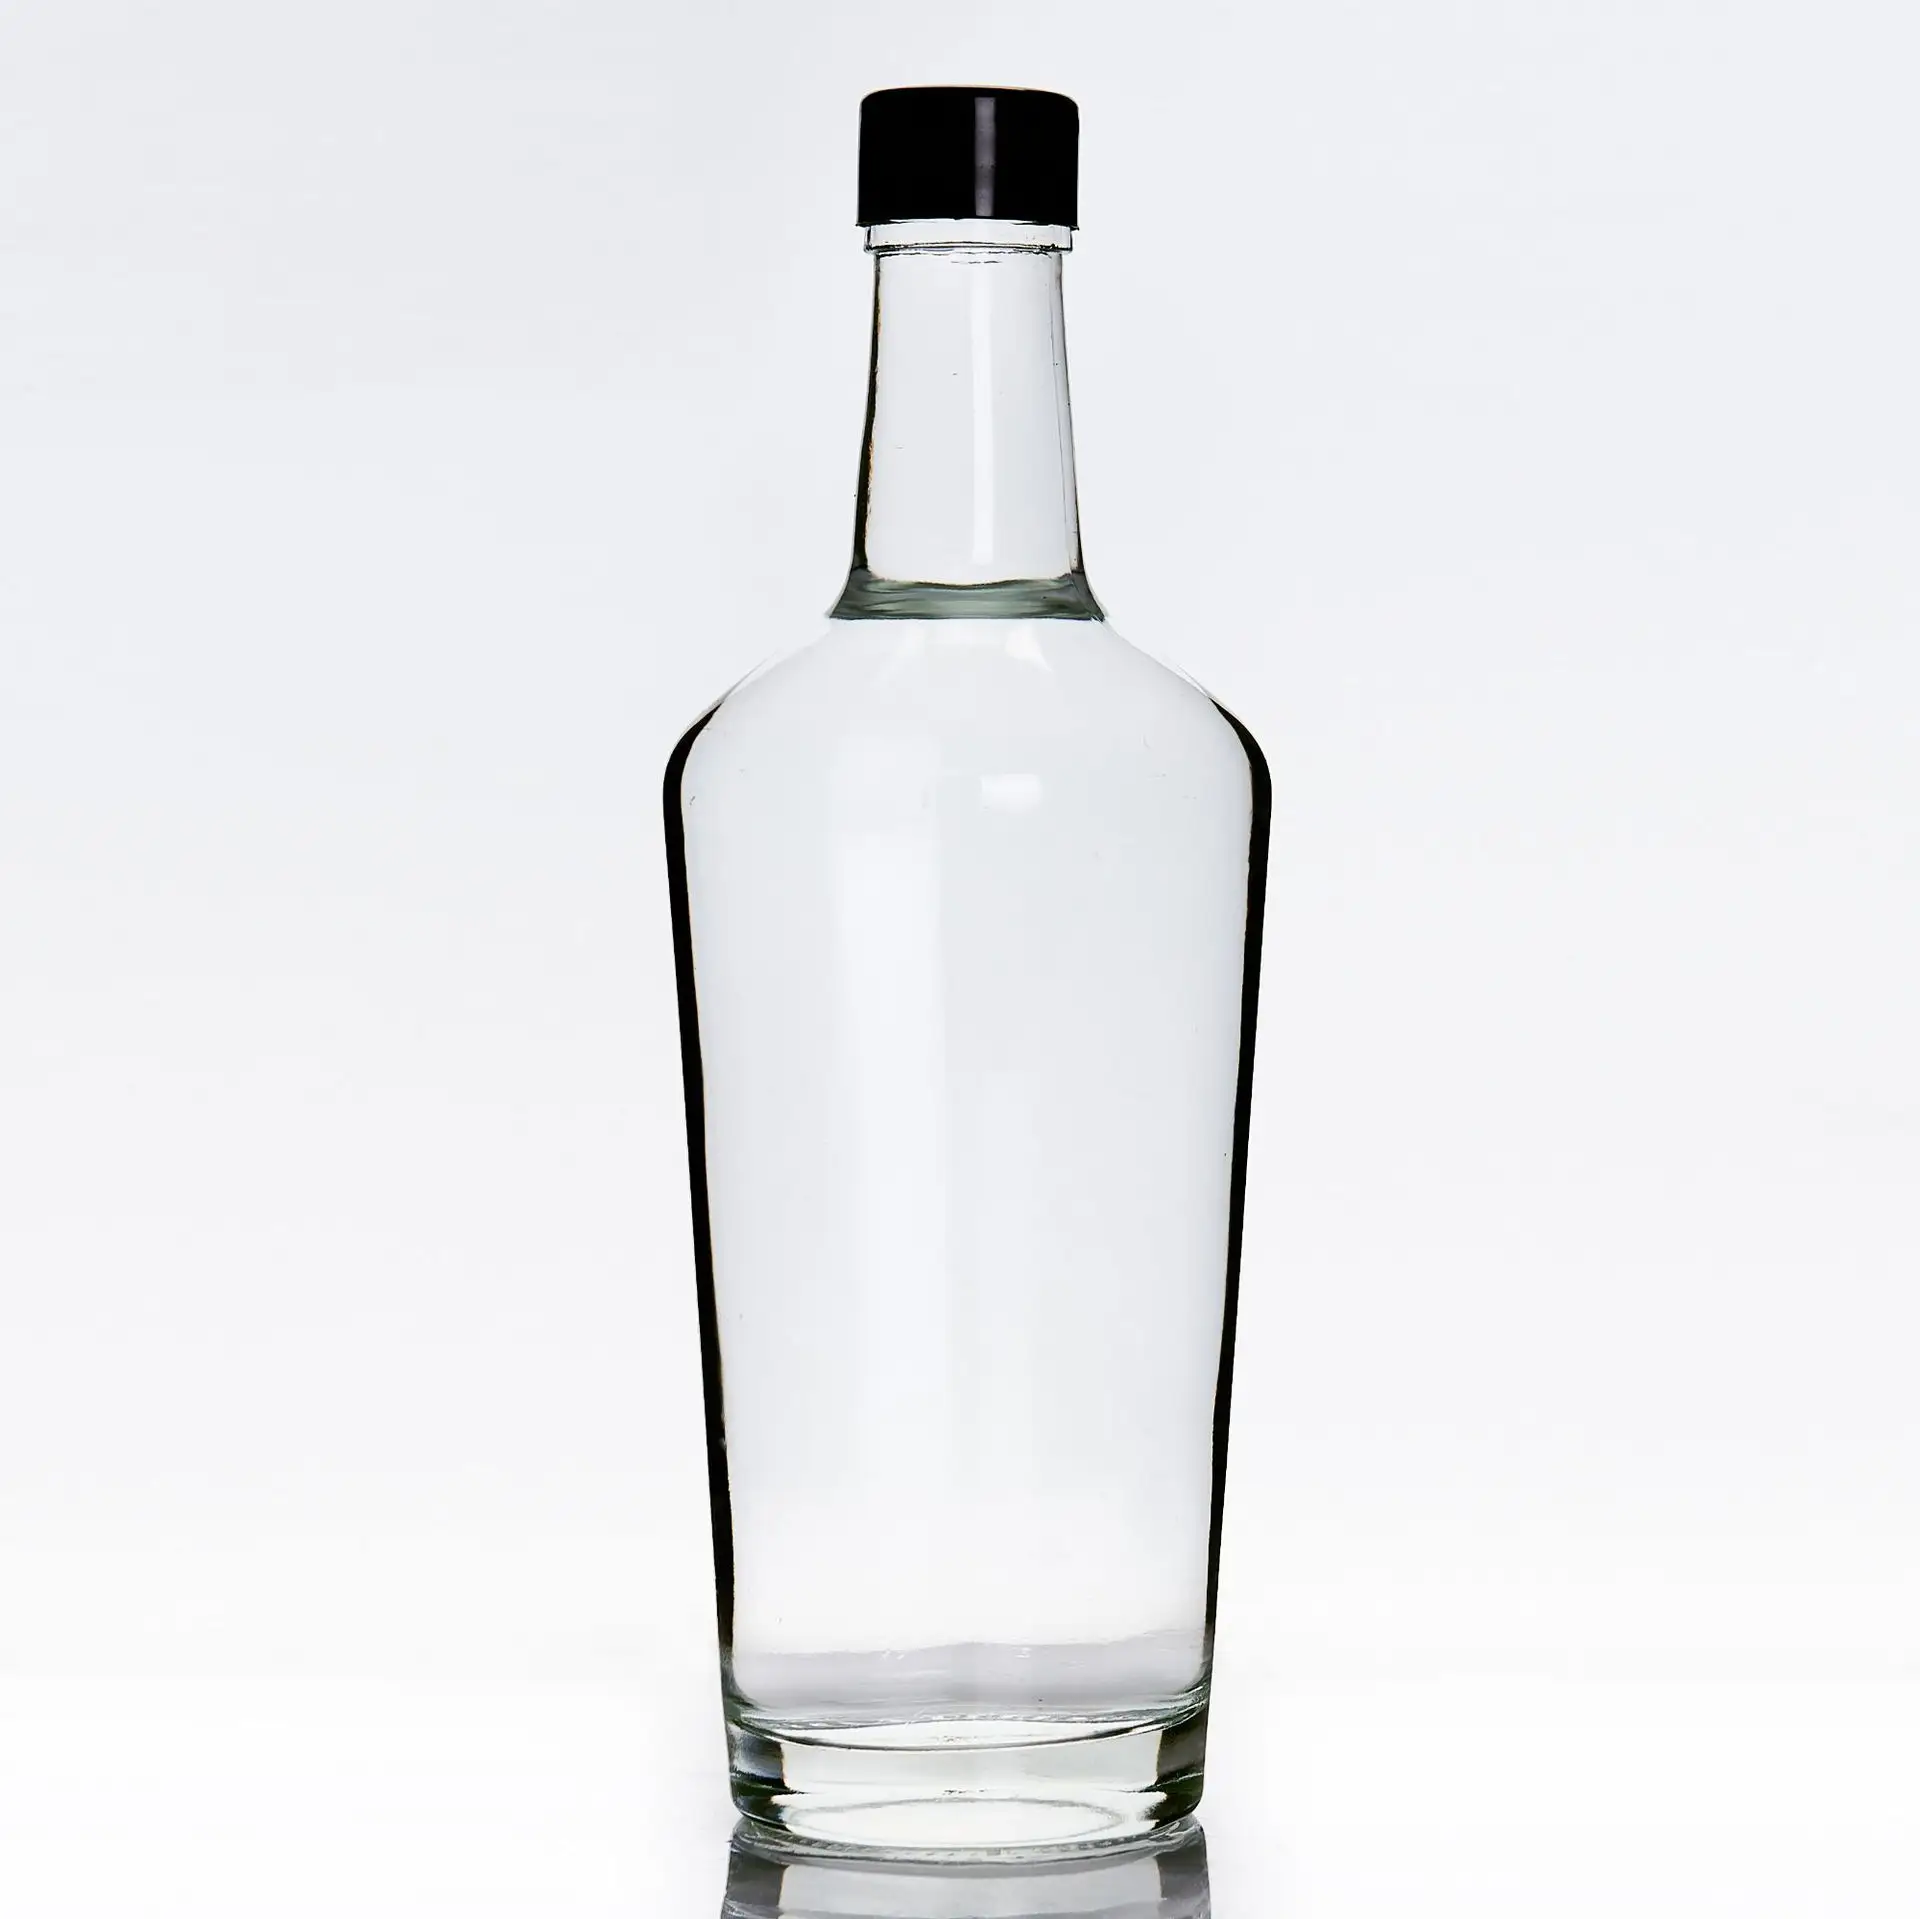 700 ml di alcol vuoto in stile nordico liquore di whisky gin whisky glass vodka spirit bottles per liquore con tappo